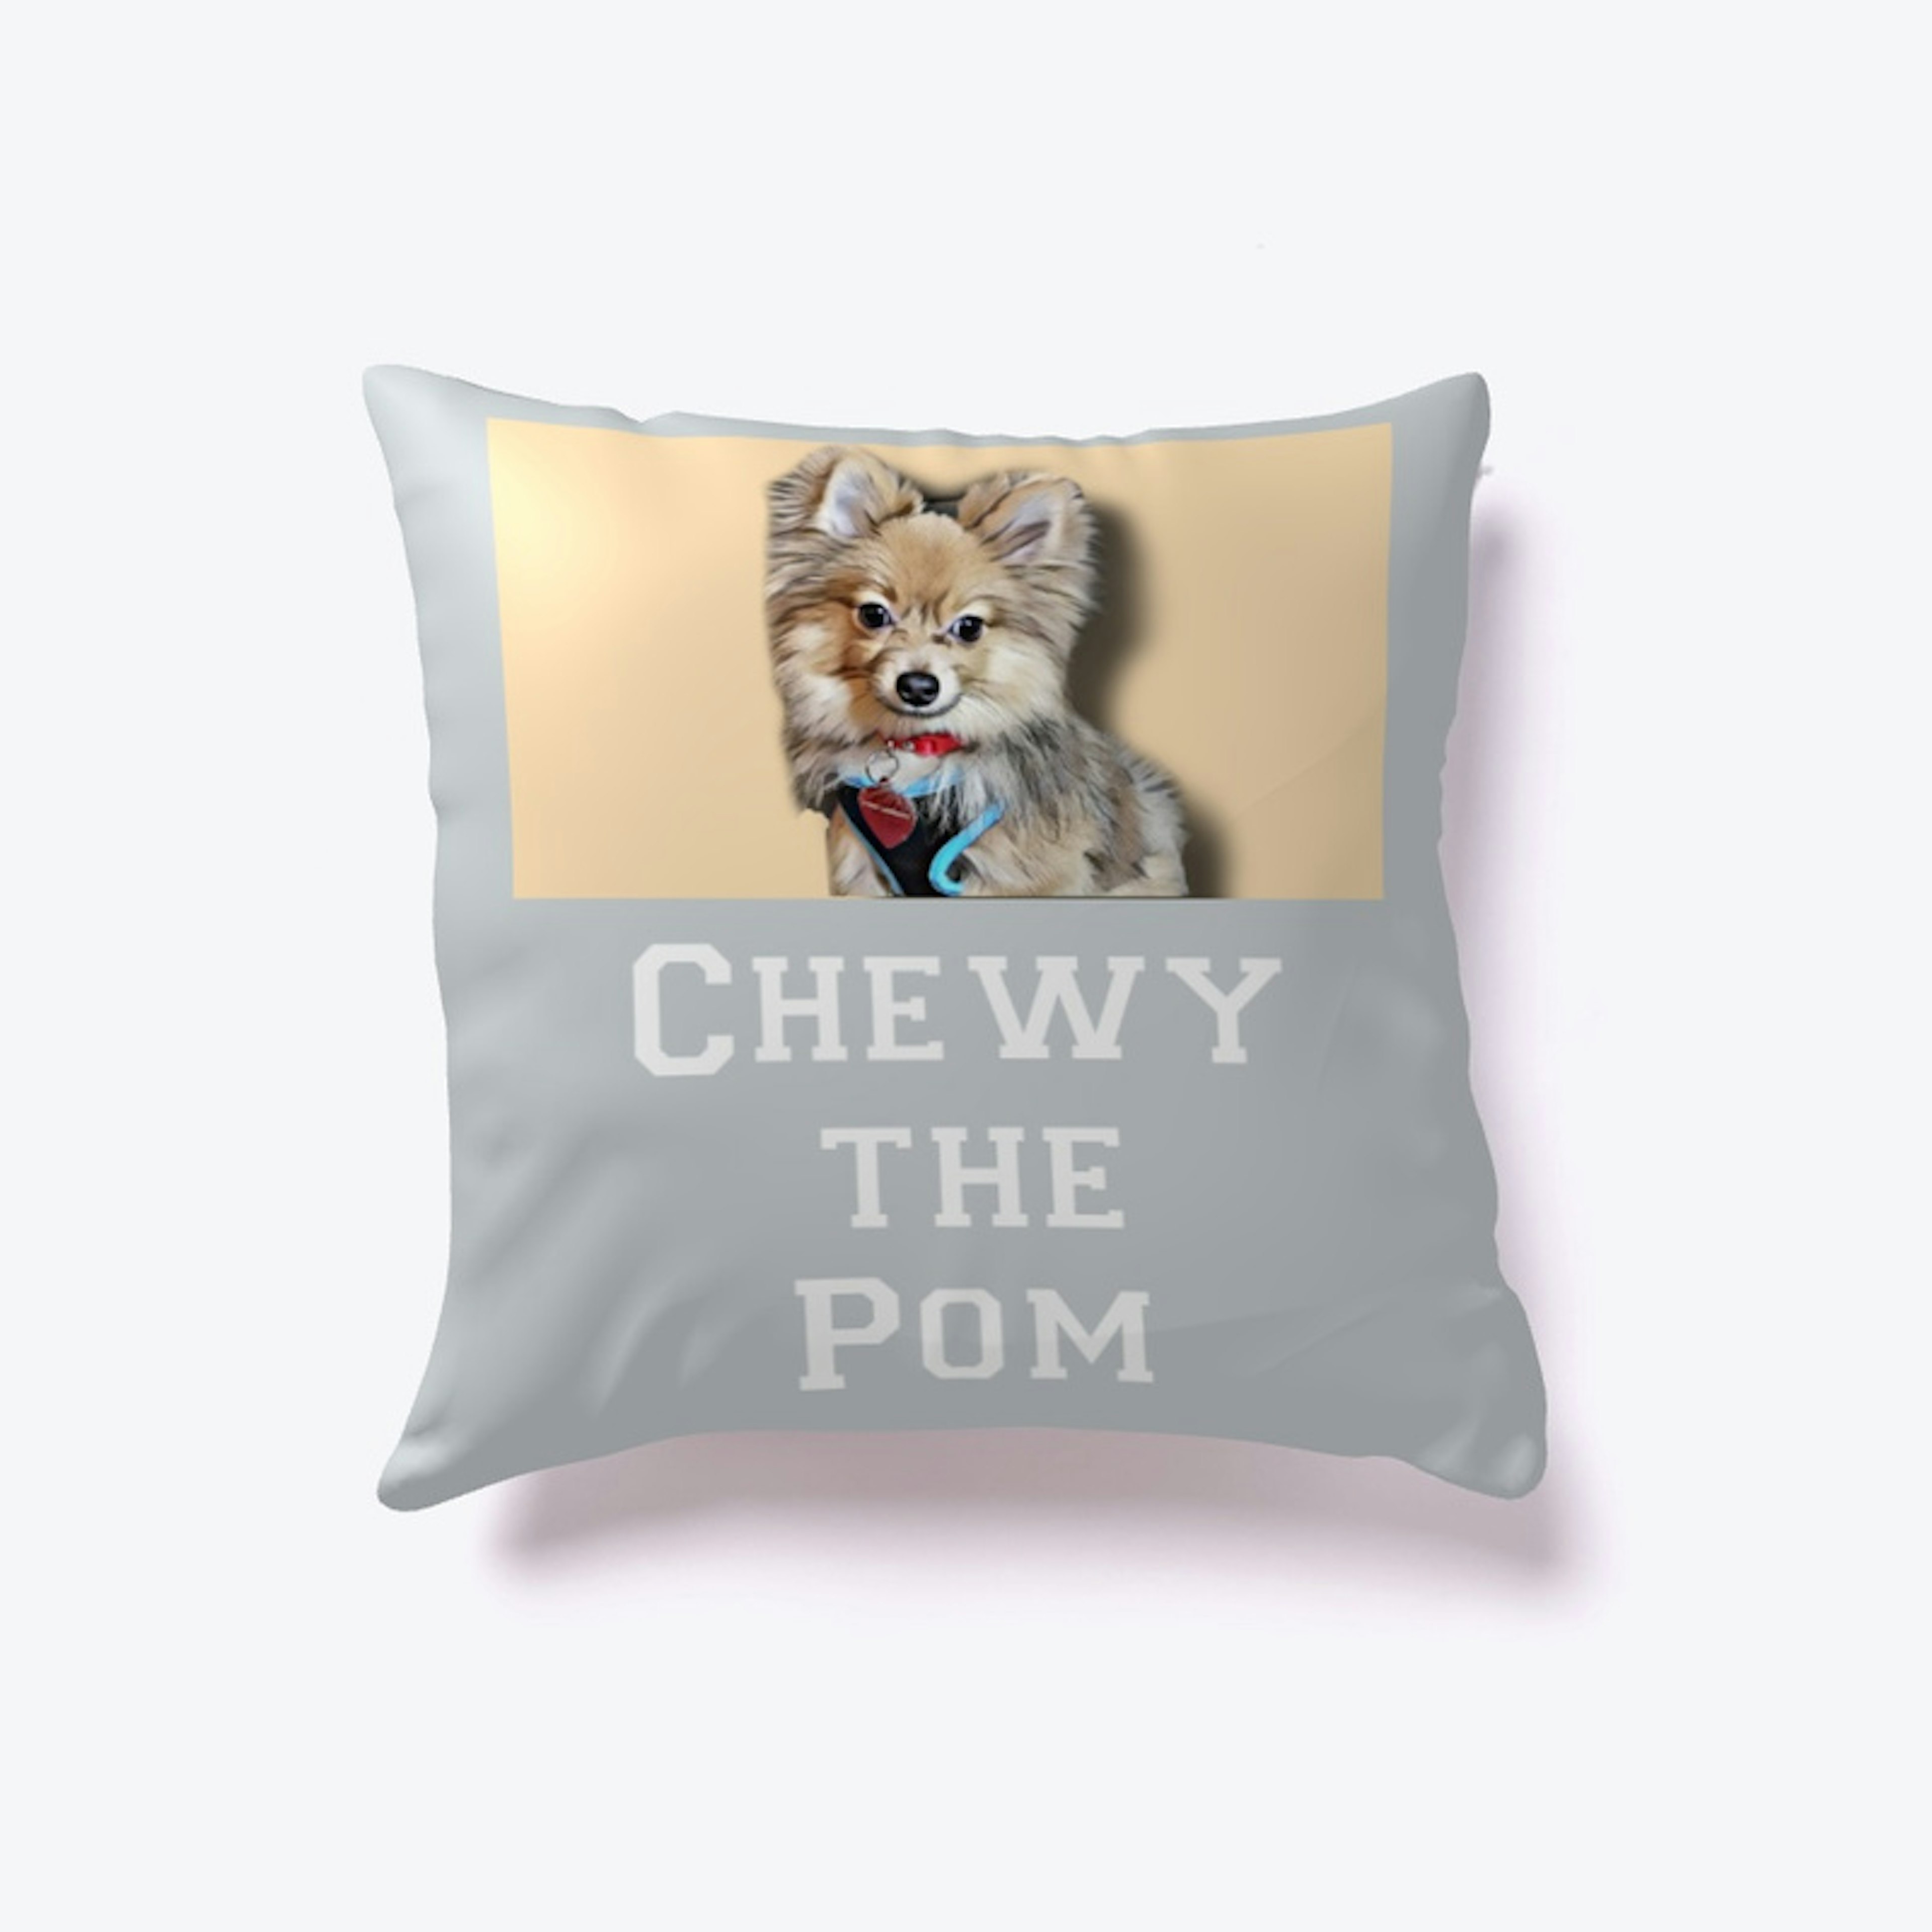 Chewy THE Pom 👑